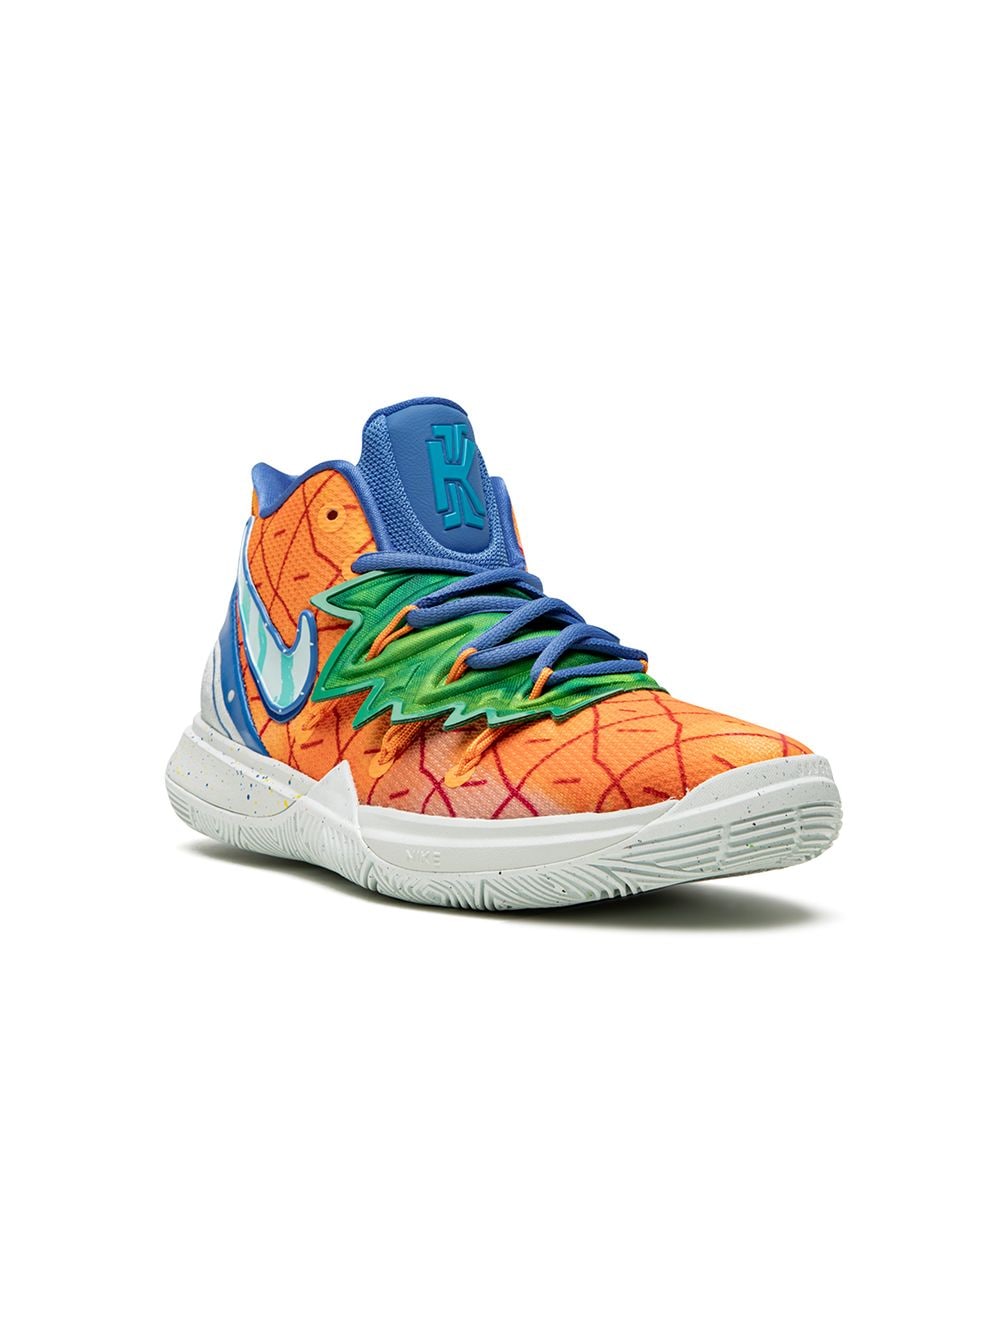 Image 1 of Nike Kids Kyrie 5 'Spongebob Pineapple House' sneakers